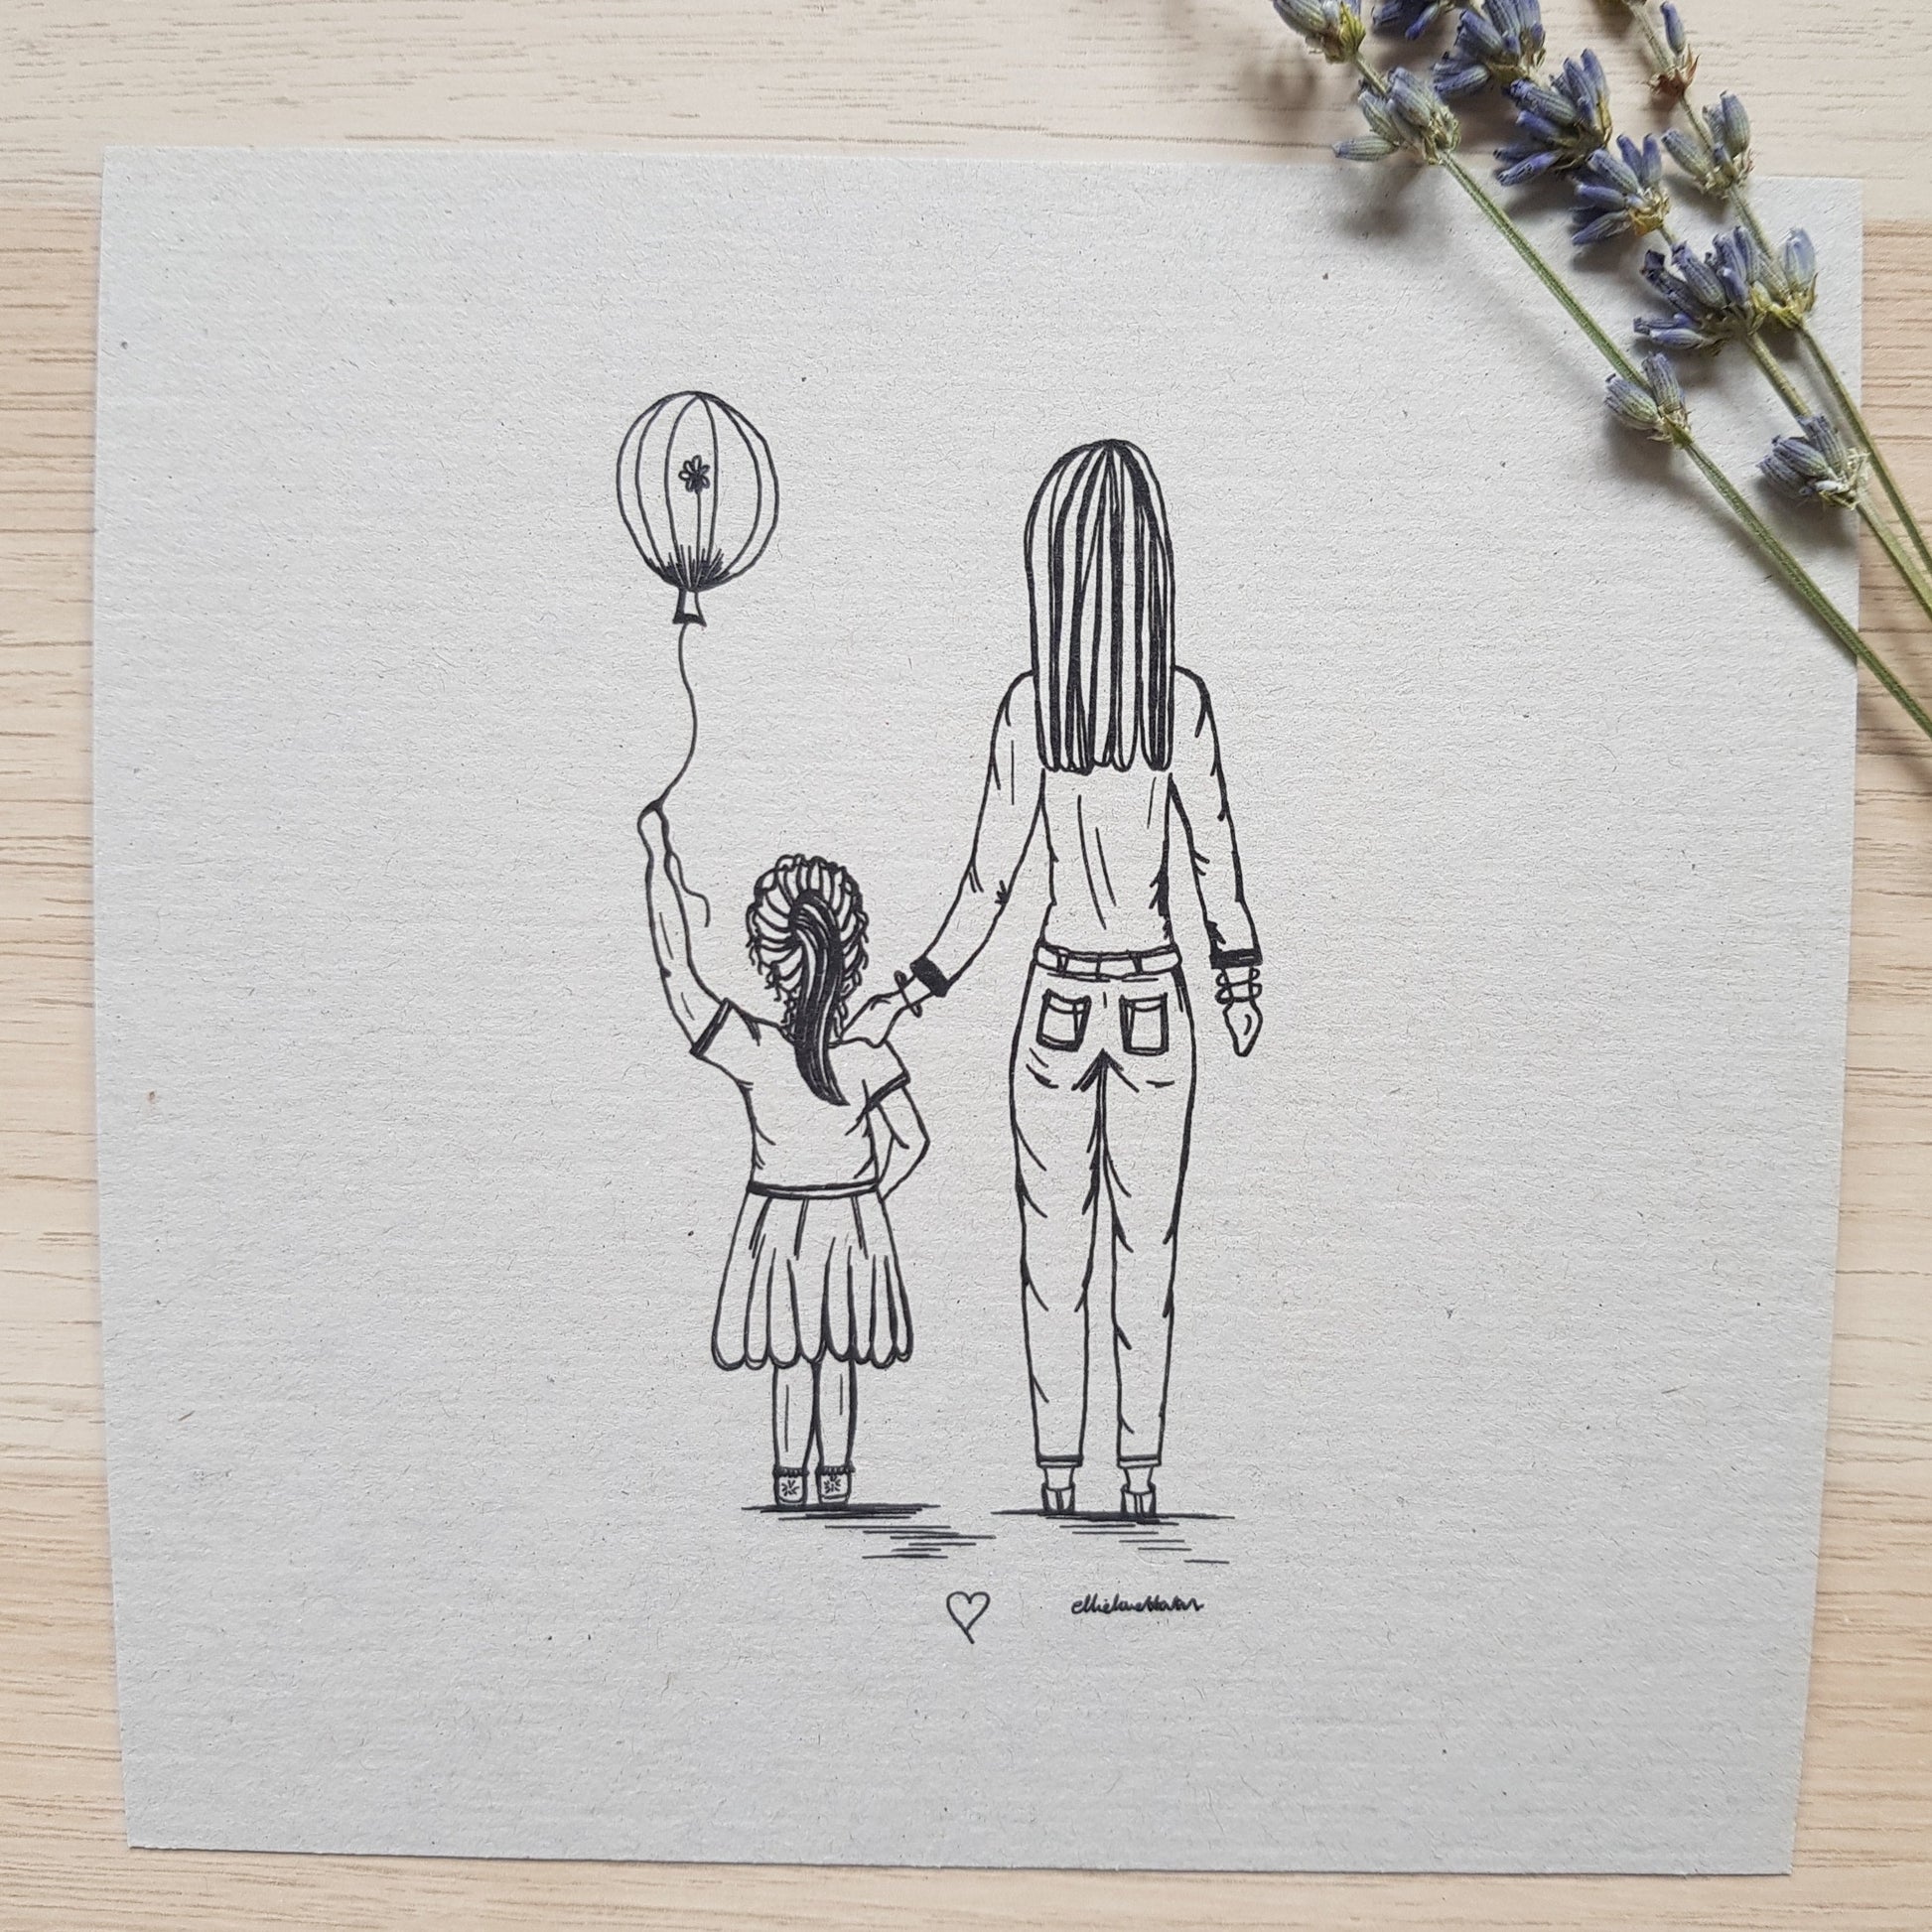 Mum and Daughter art print